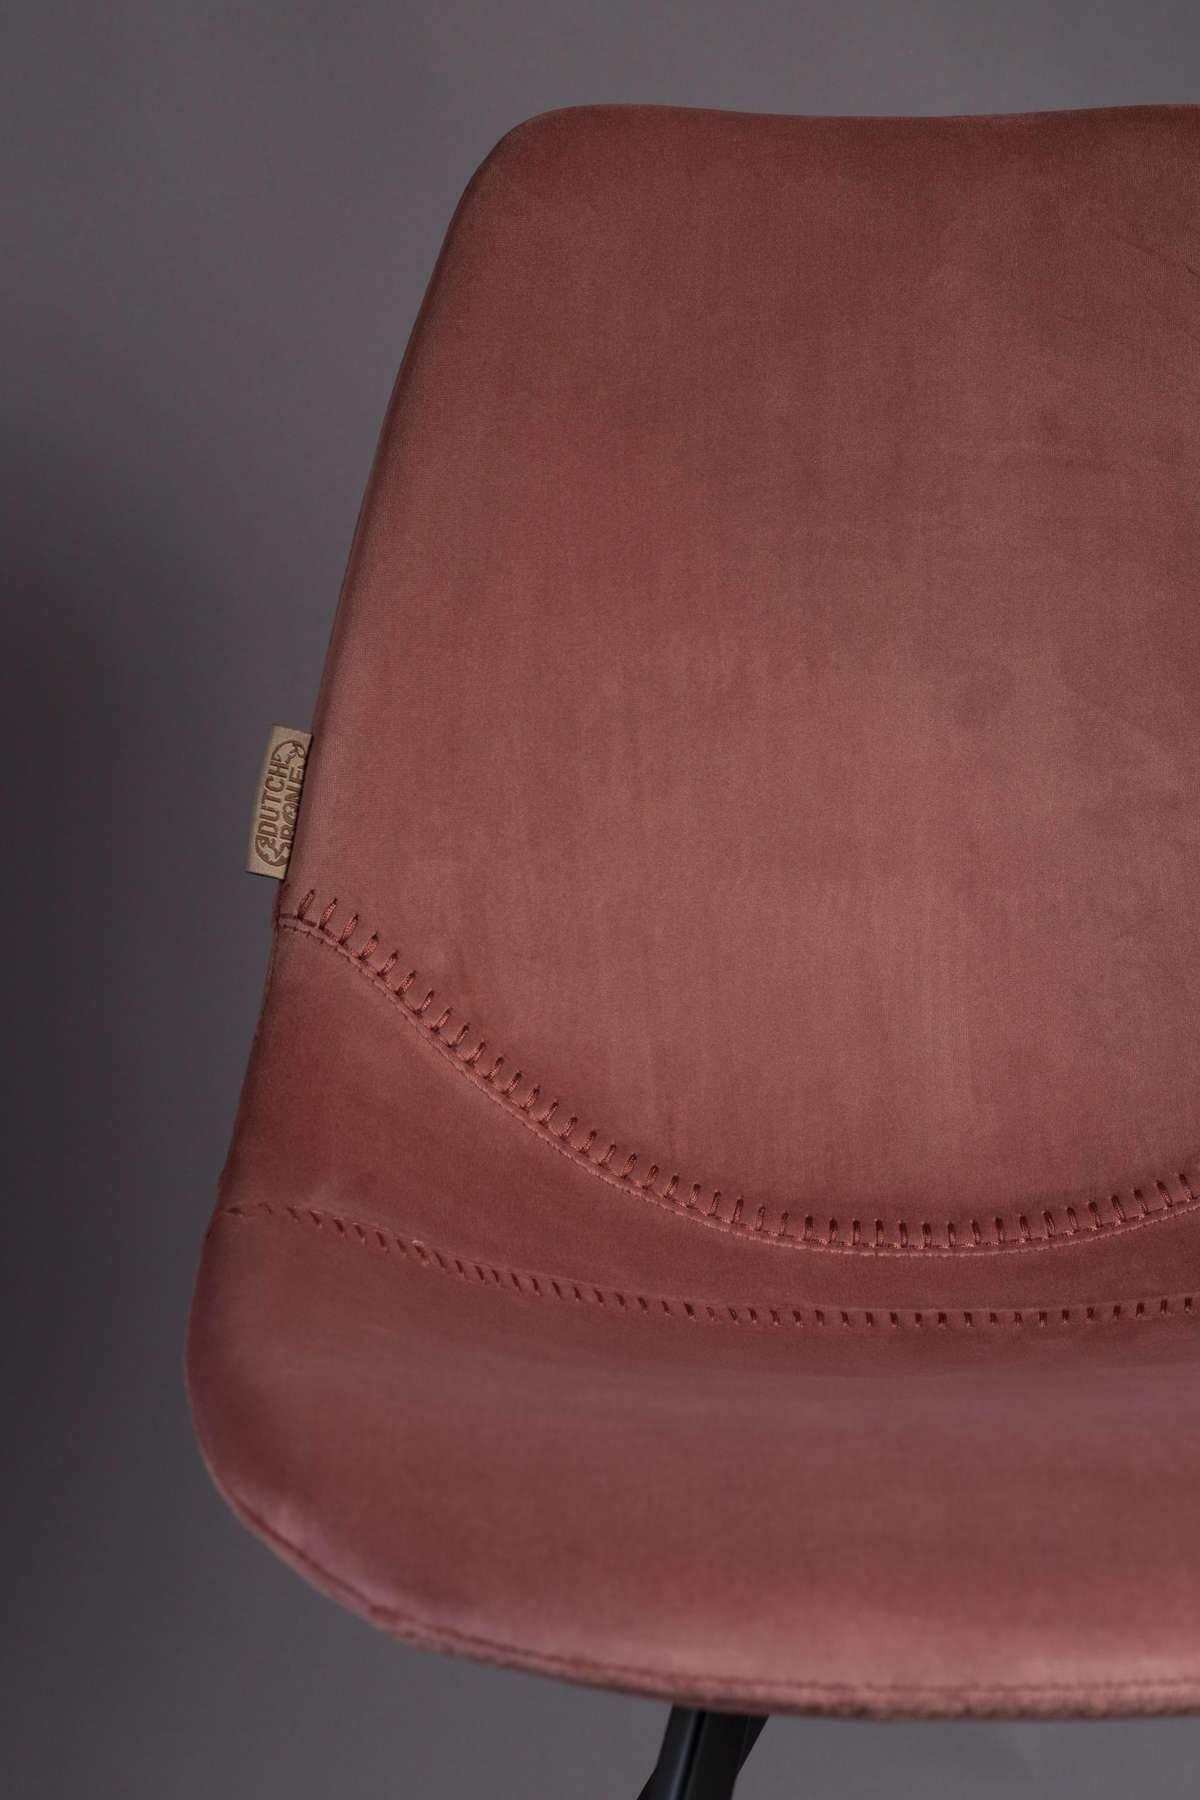 Krzesło FRANKY VELVET różowy, Dutchbone, Eye on Design